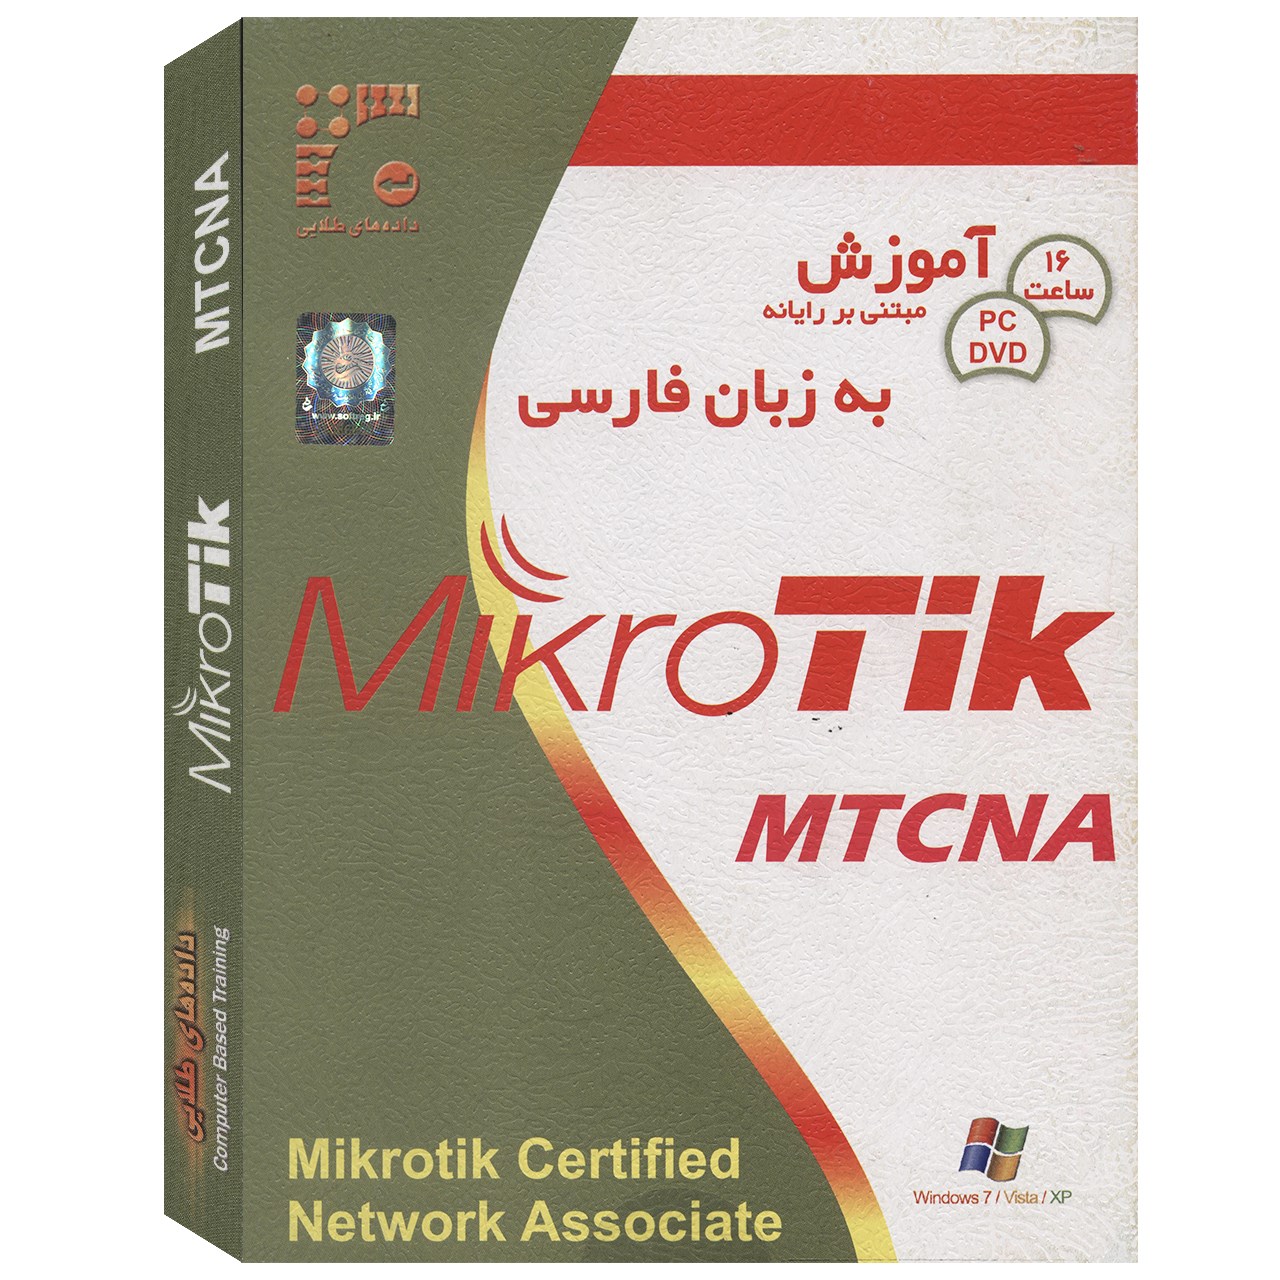 آموزش MiroTik Mtcna نشر داده های طلایی